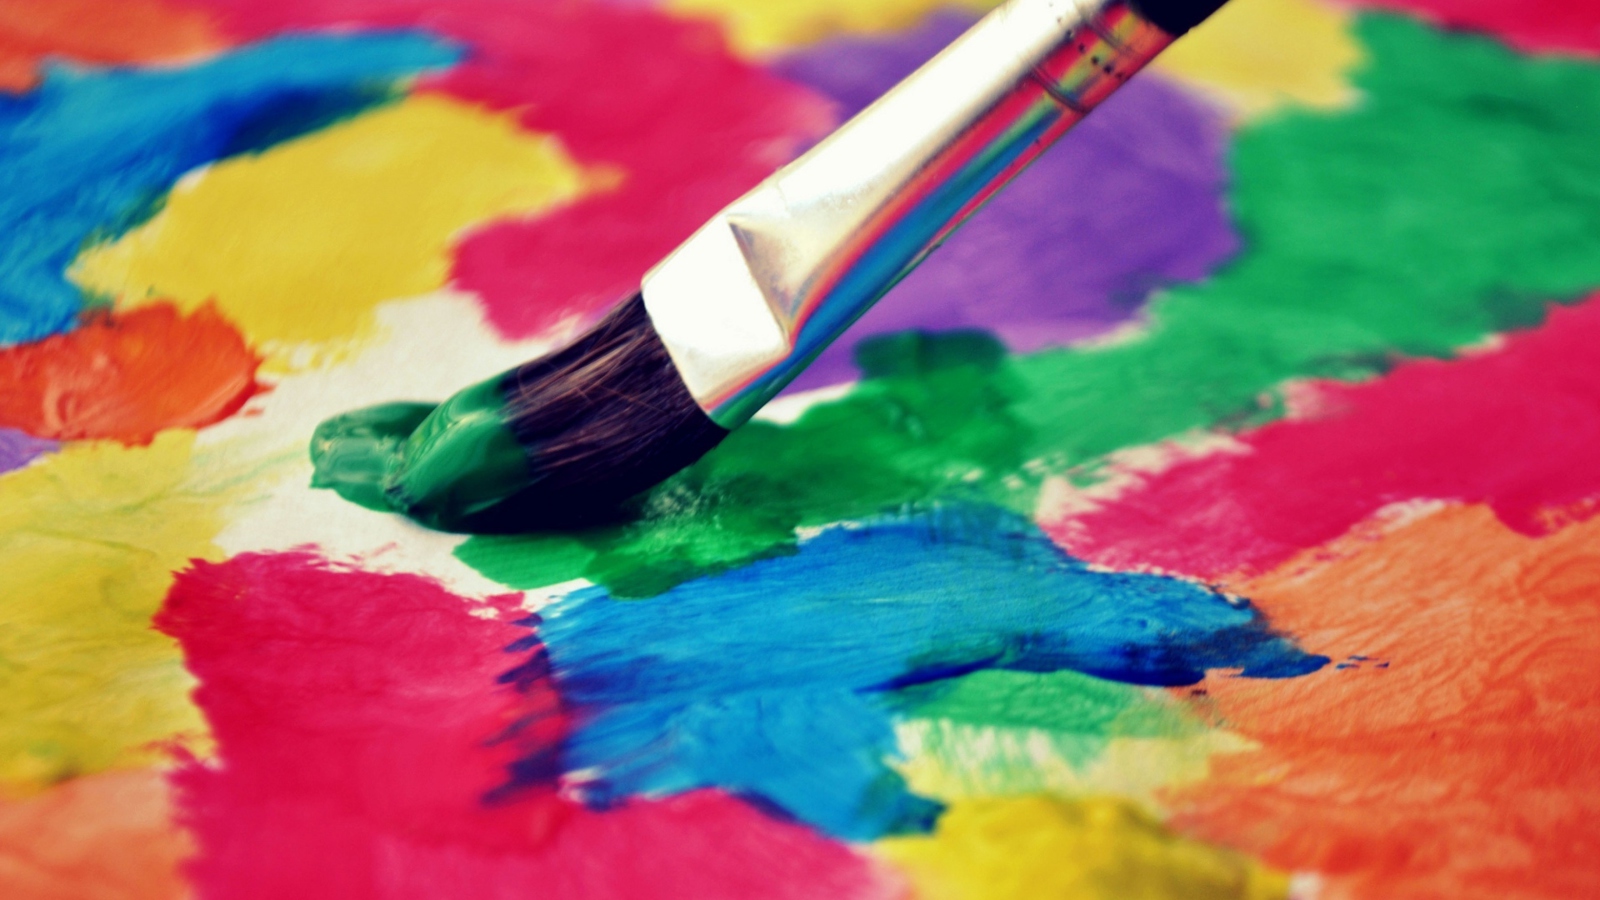 Sfondi Art Brush And Colorful Paint 1600x900